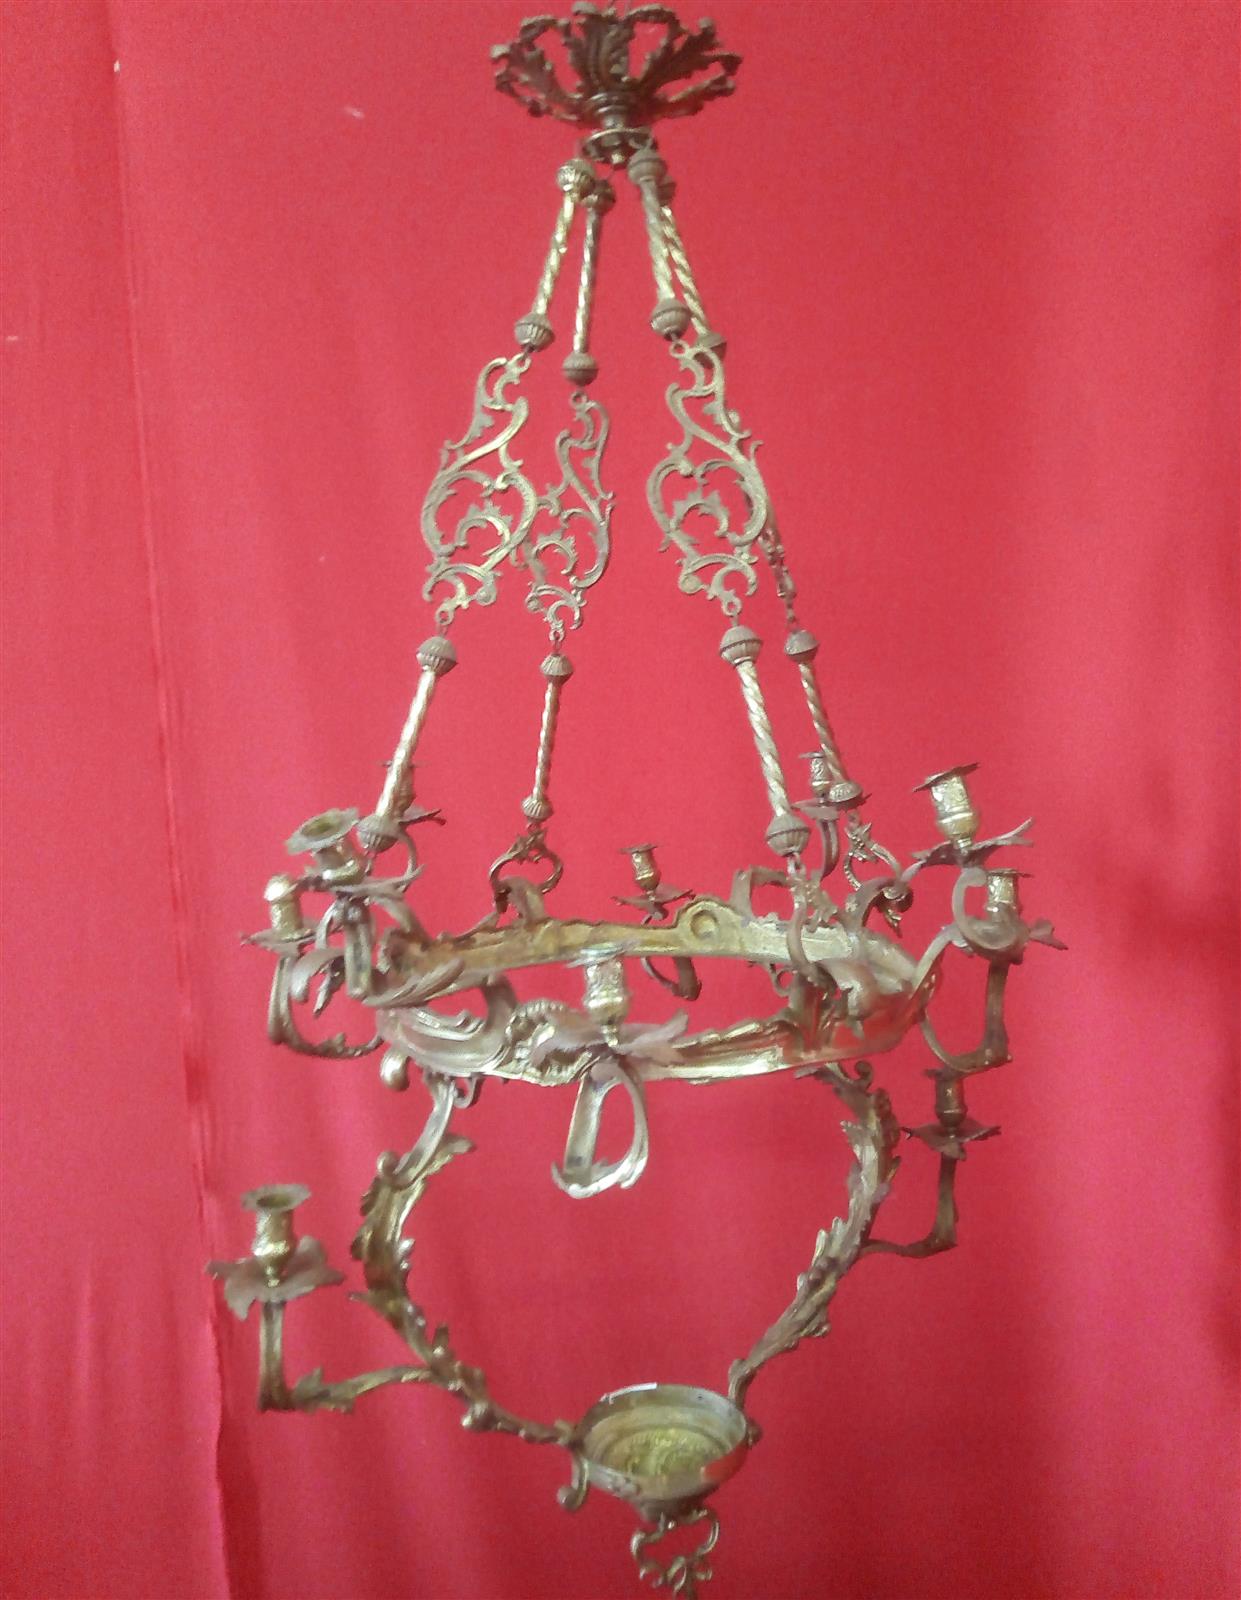 Bronze chandelier with cobalt blue cup